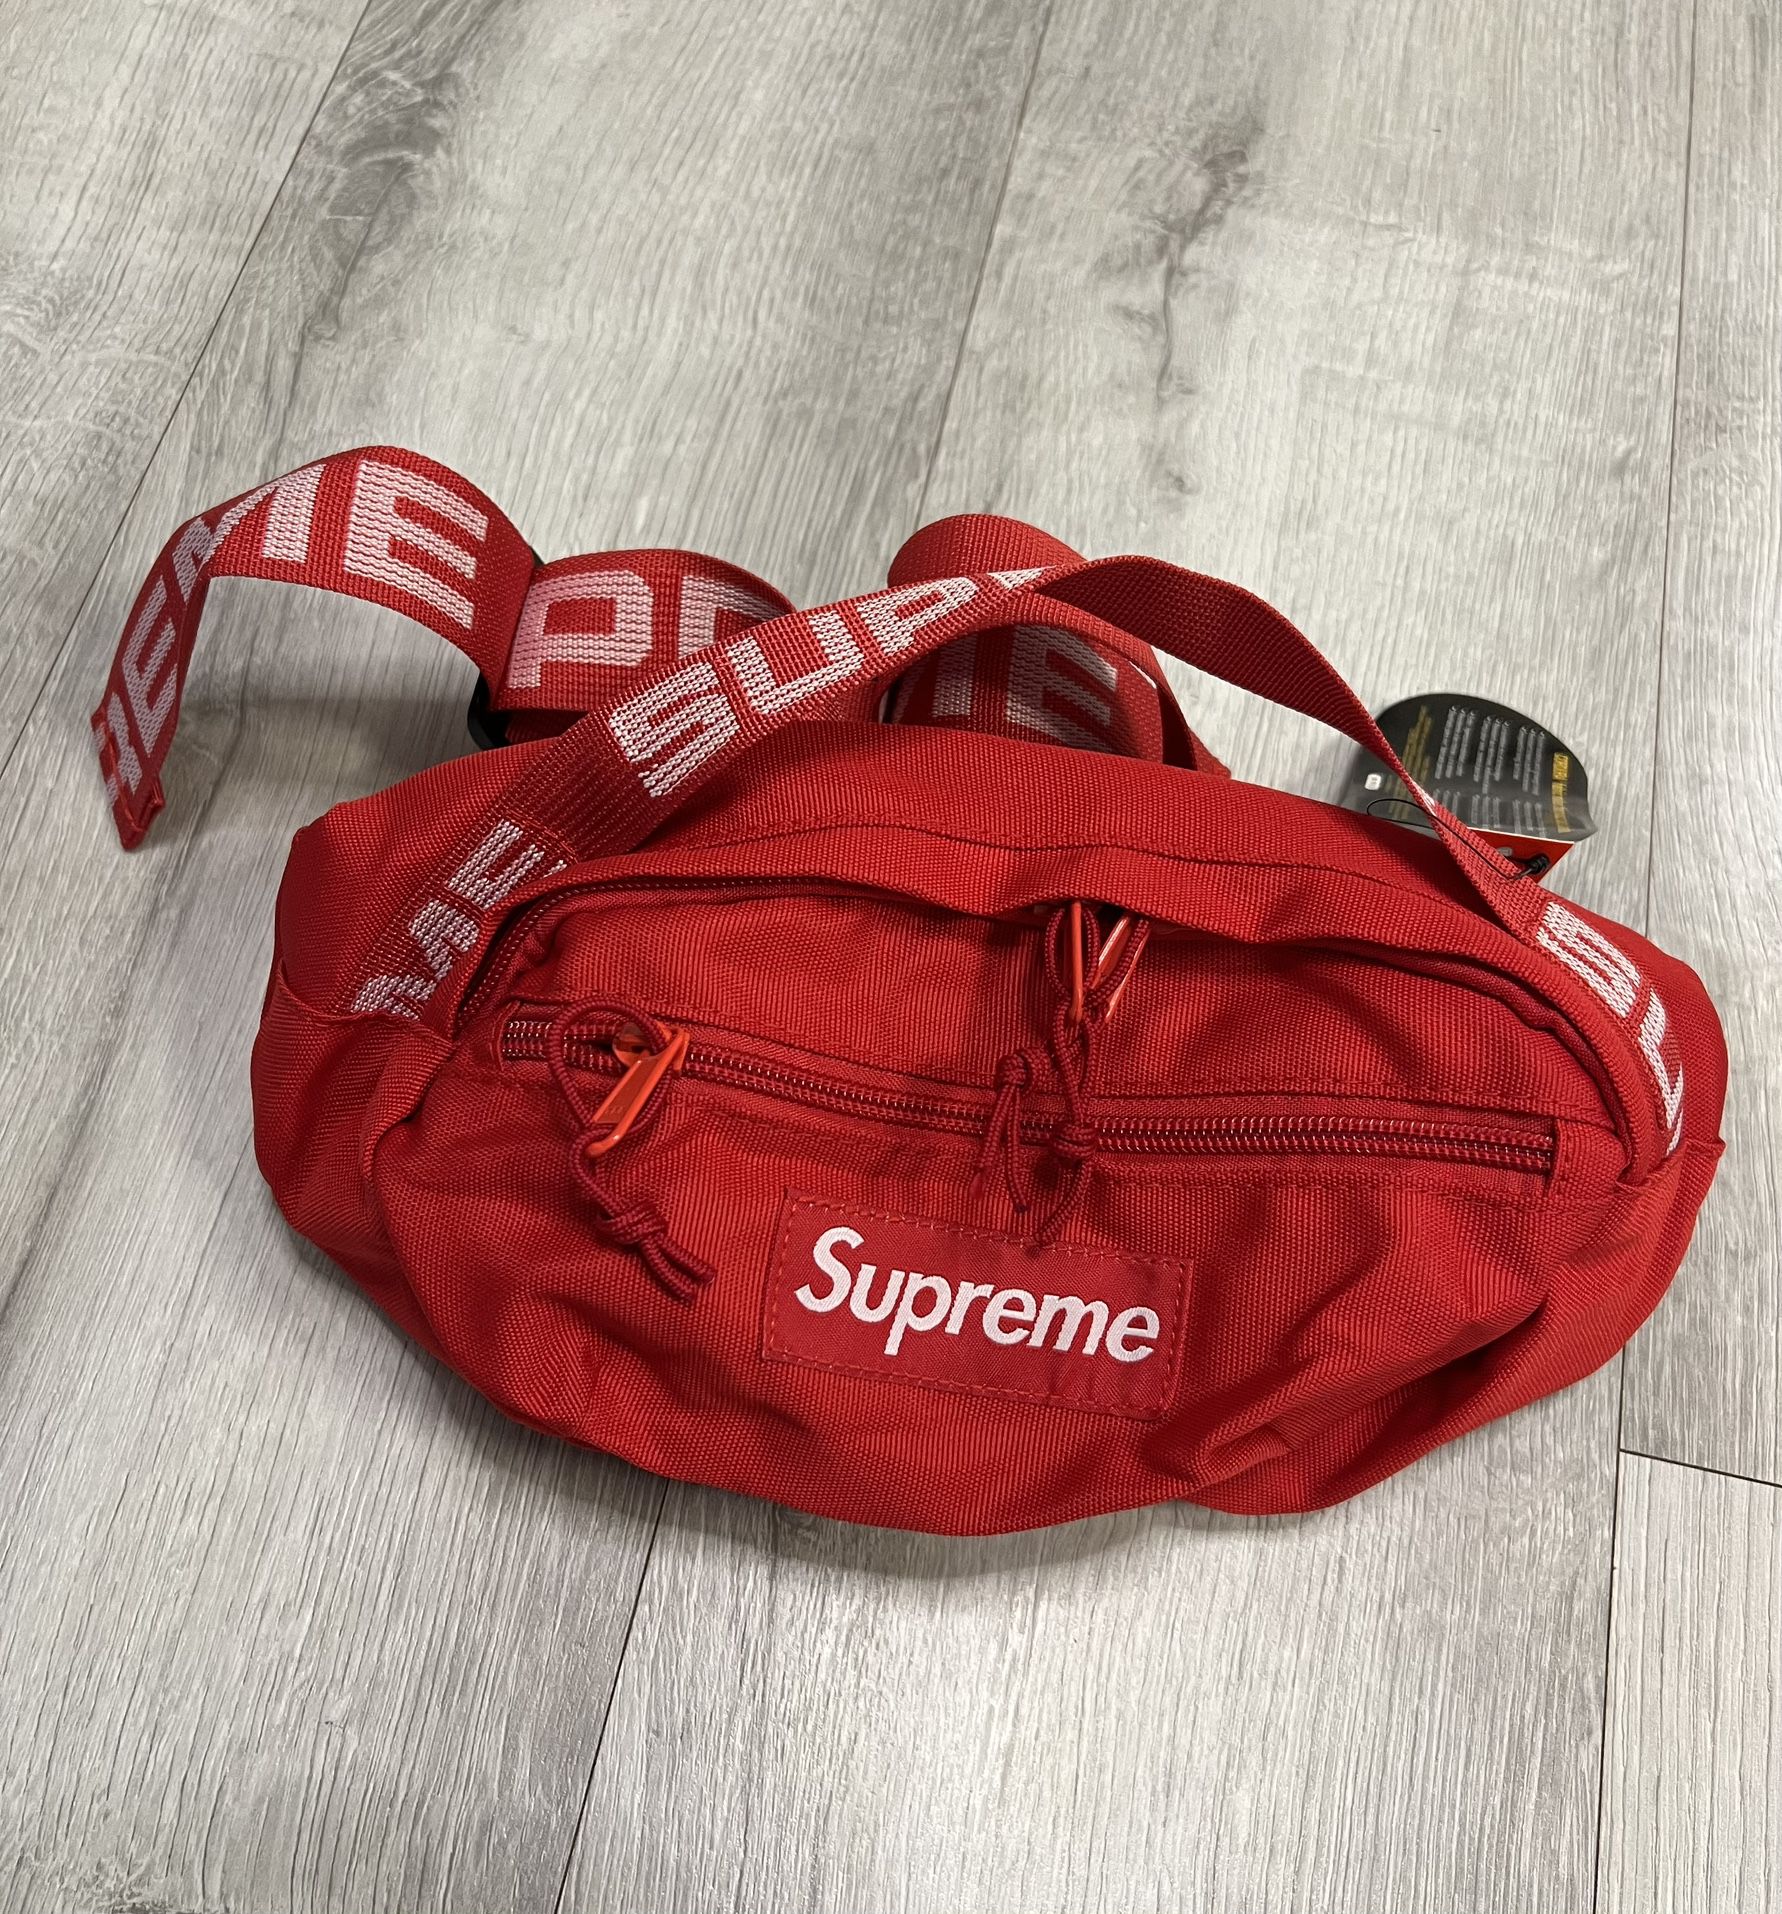 Bag $80 Supreme